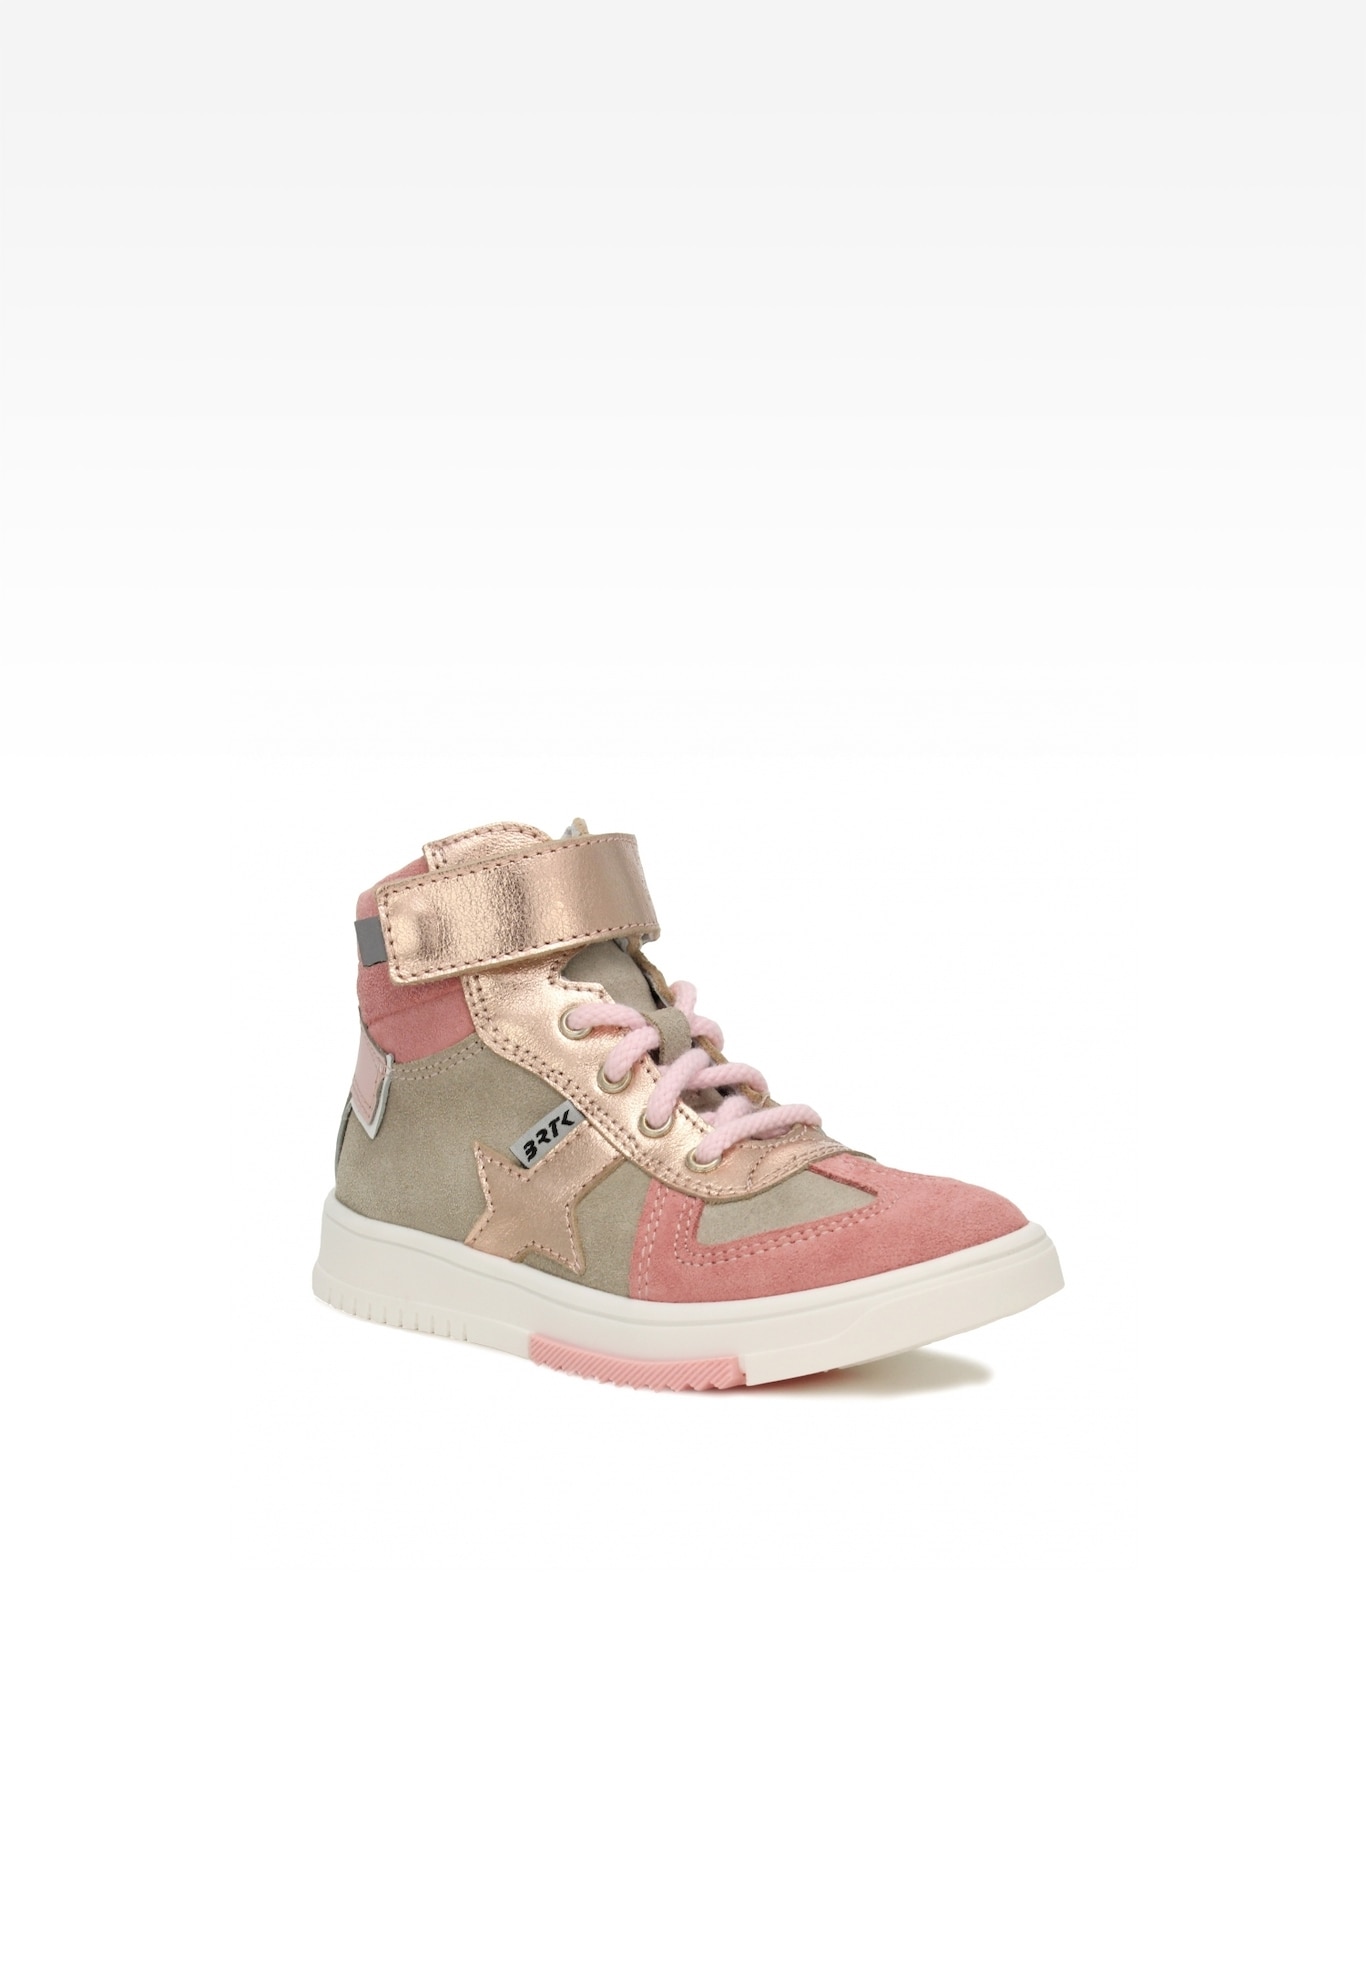 Sneakers BARTEK 14553013 II, dla dziewcząt, beżowo-różowy